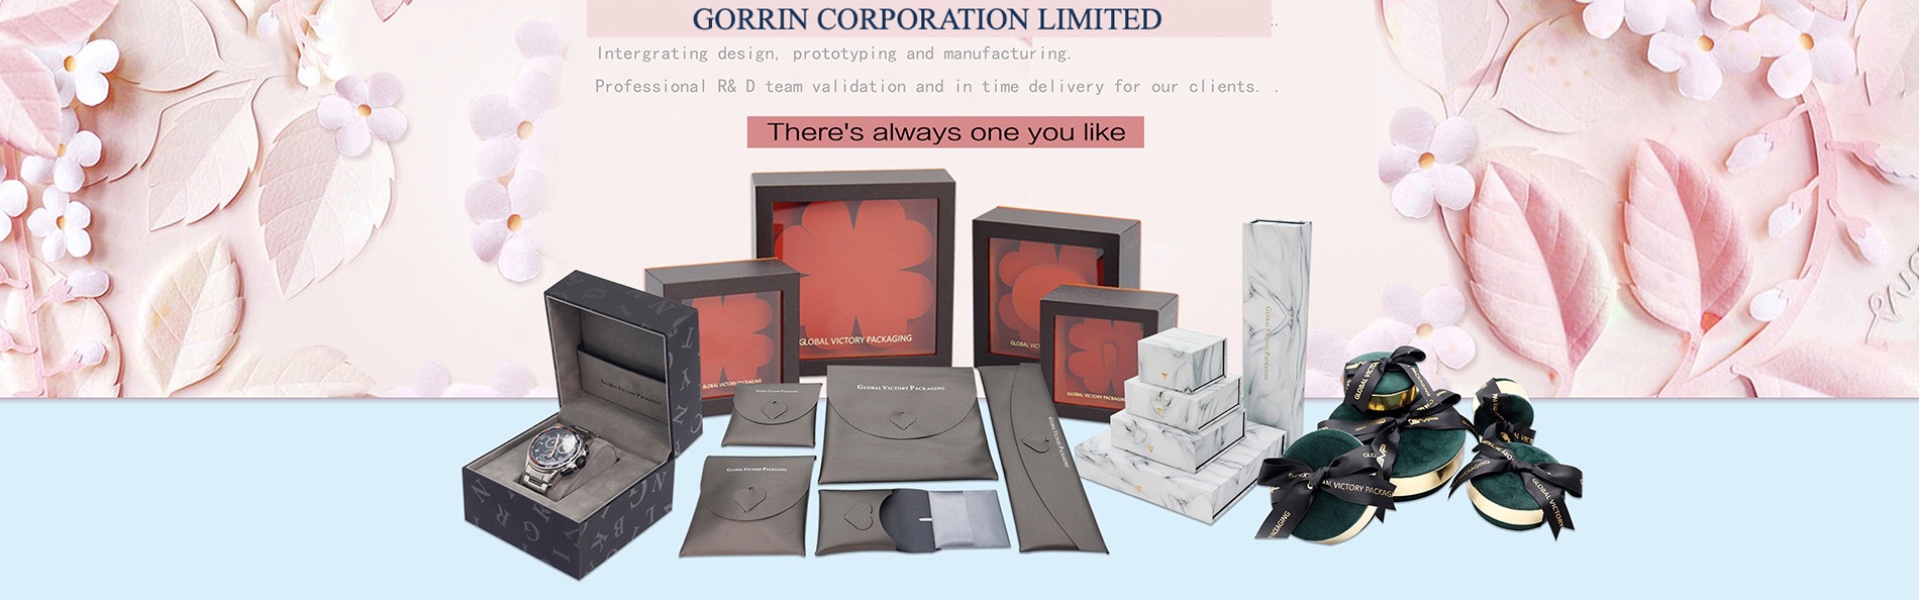 giấy, trang sức, hộp nữ trang,Gorrin corporation limited